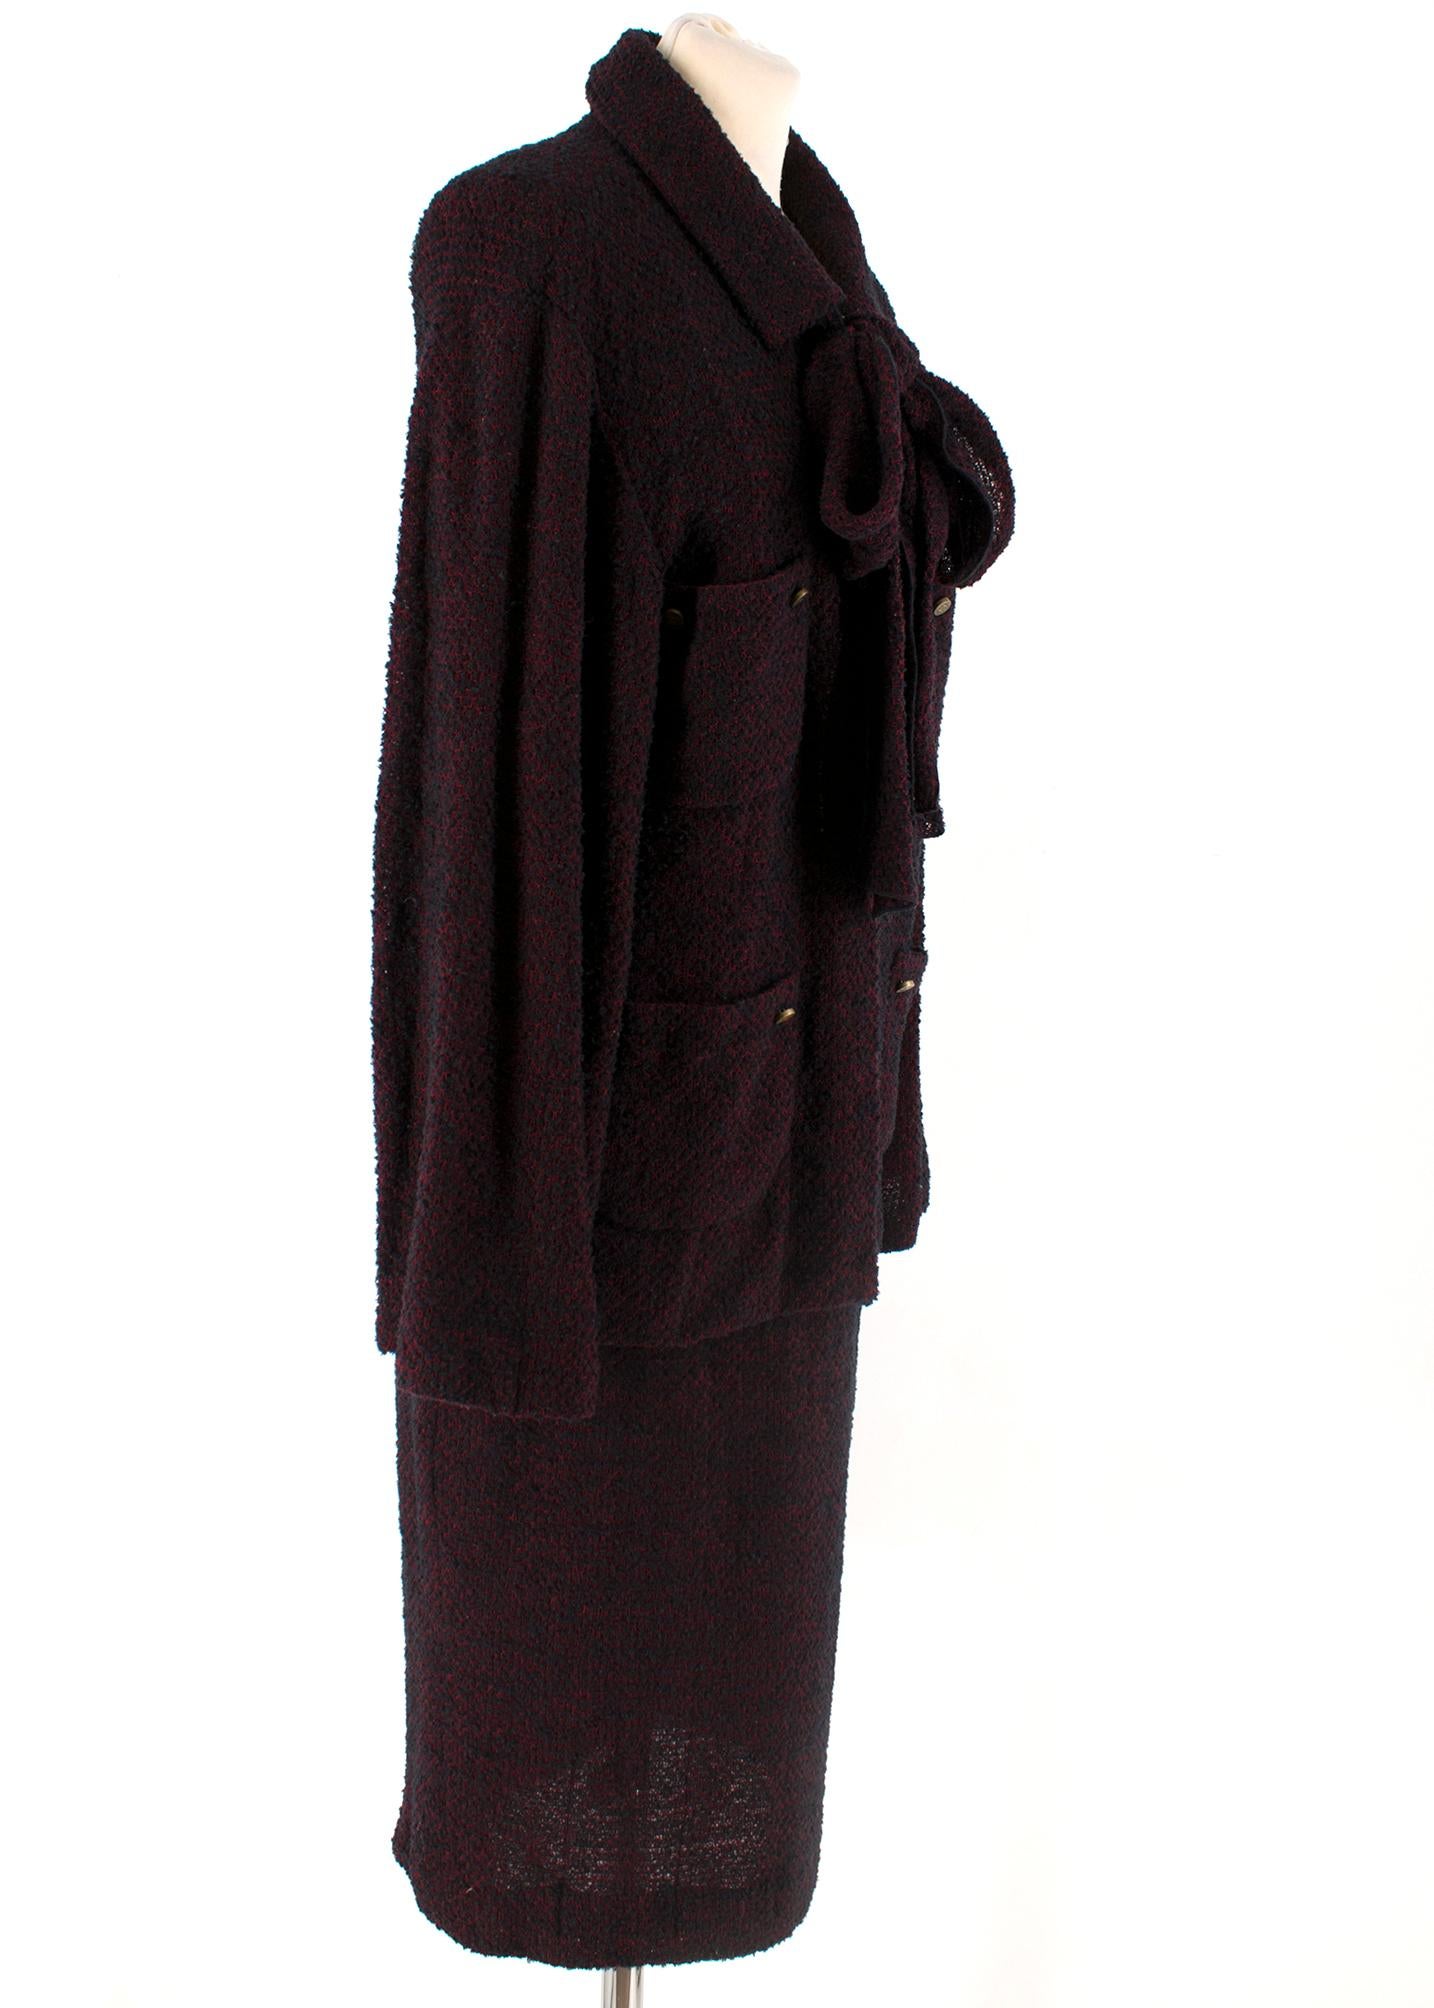 Black Chanel Vintage Burgundy Tweed Suit - Size US 4 For Sale